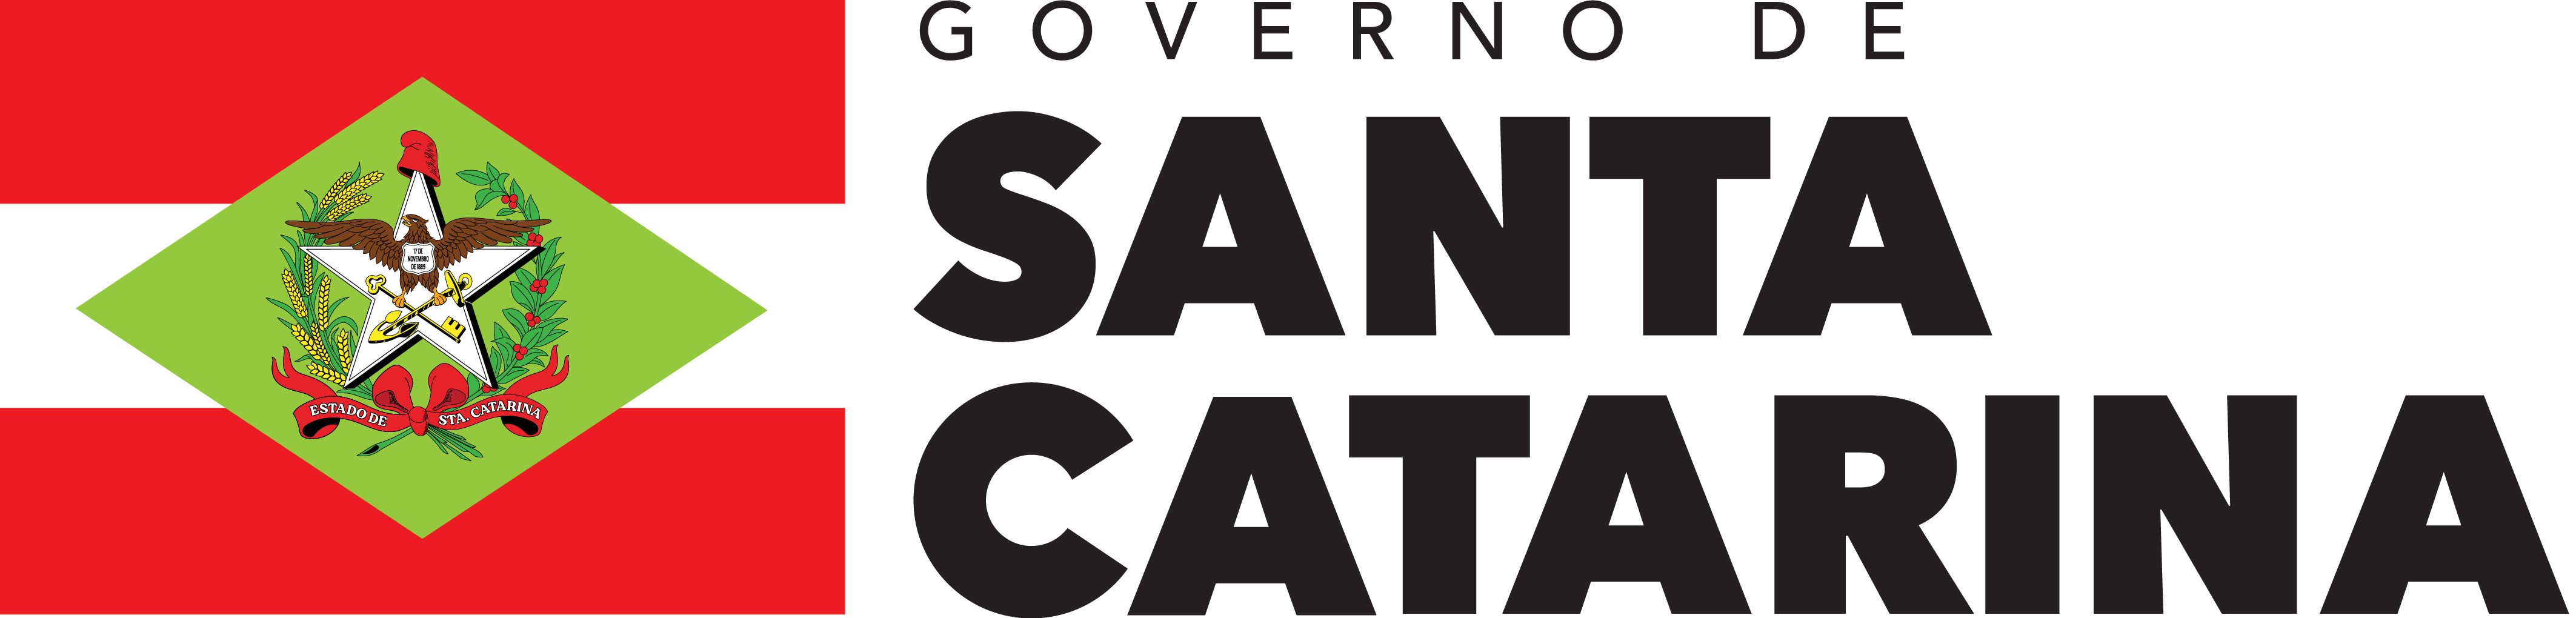 Estado do Santa Catarina